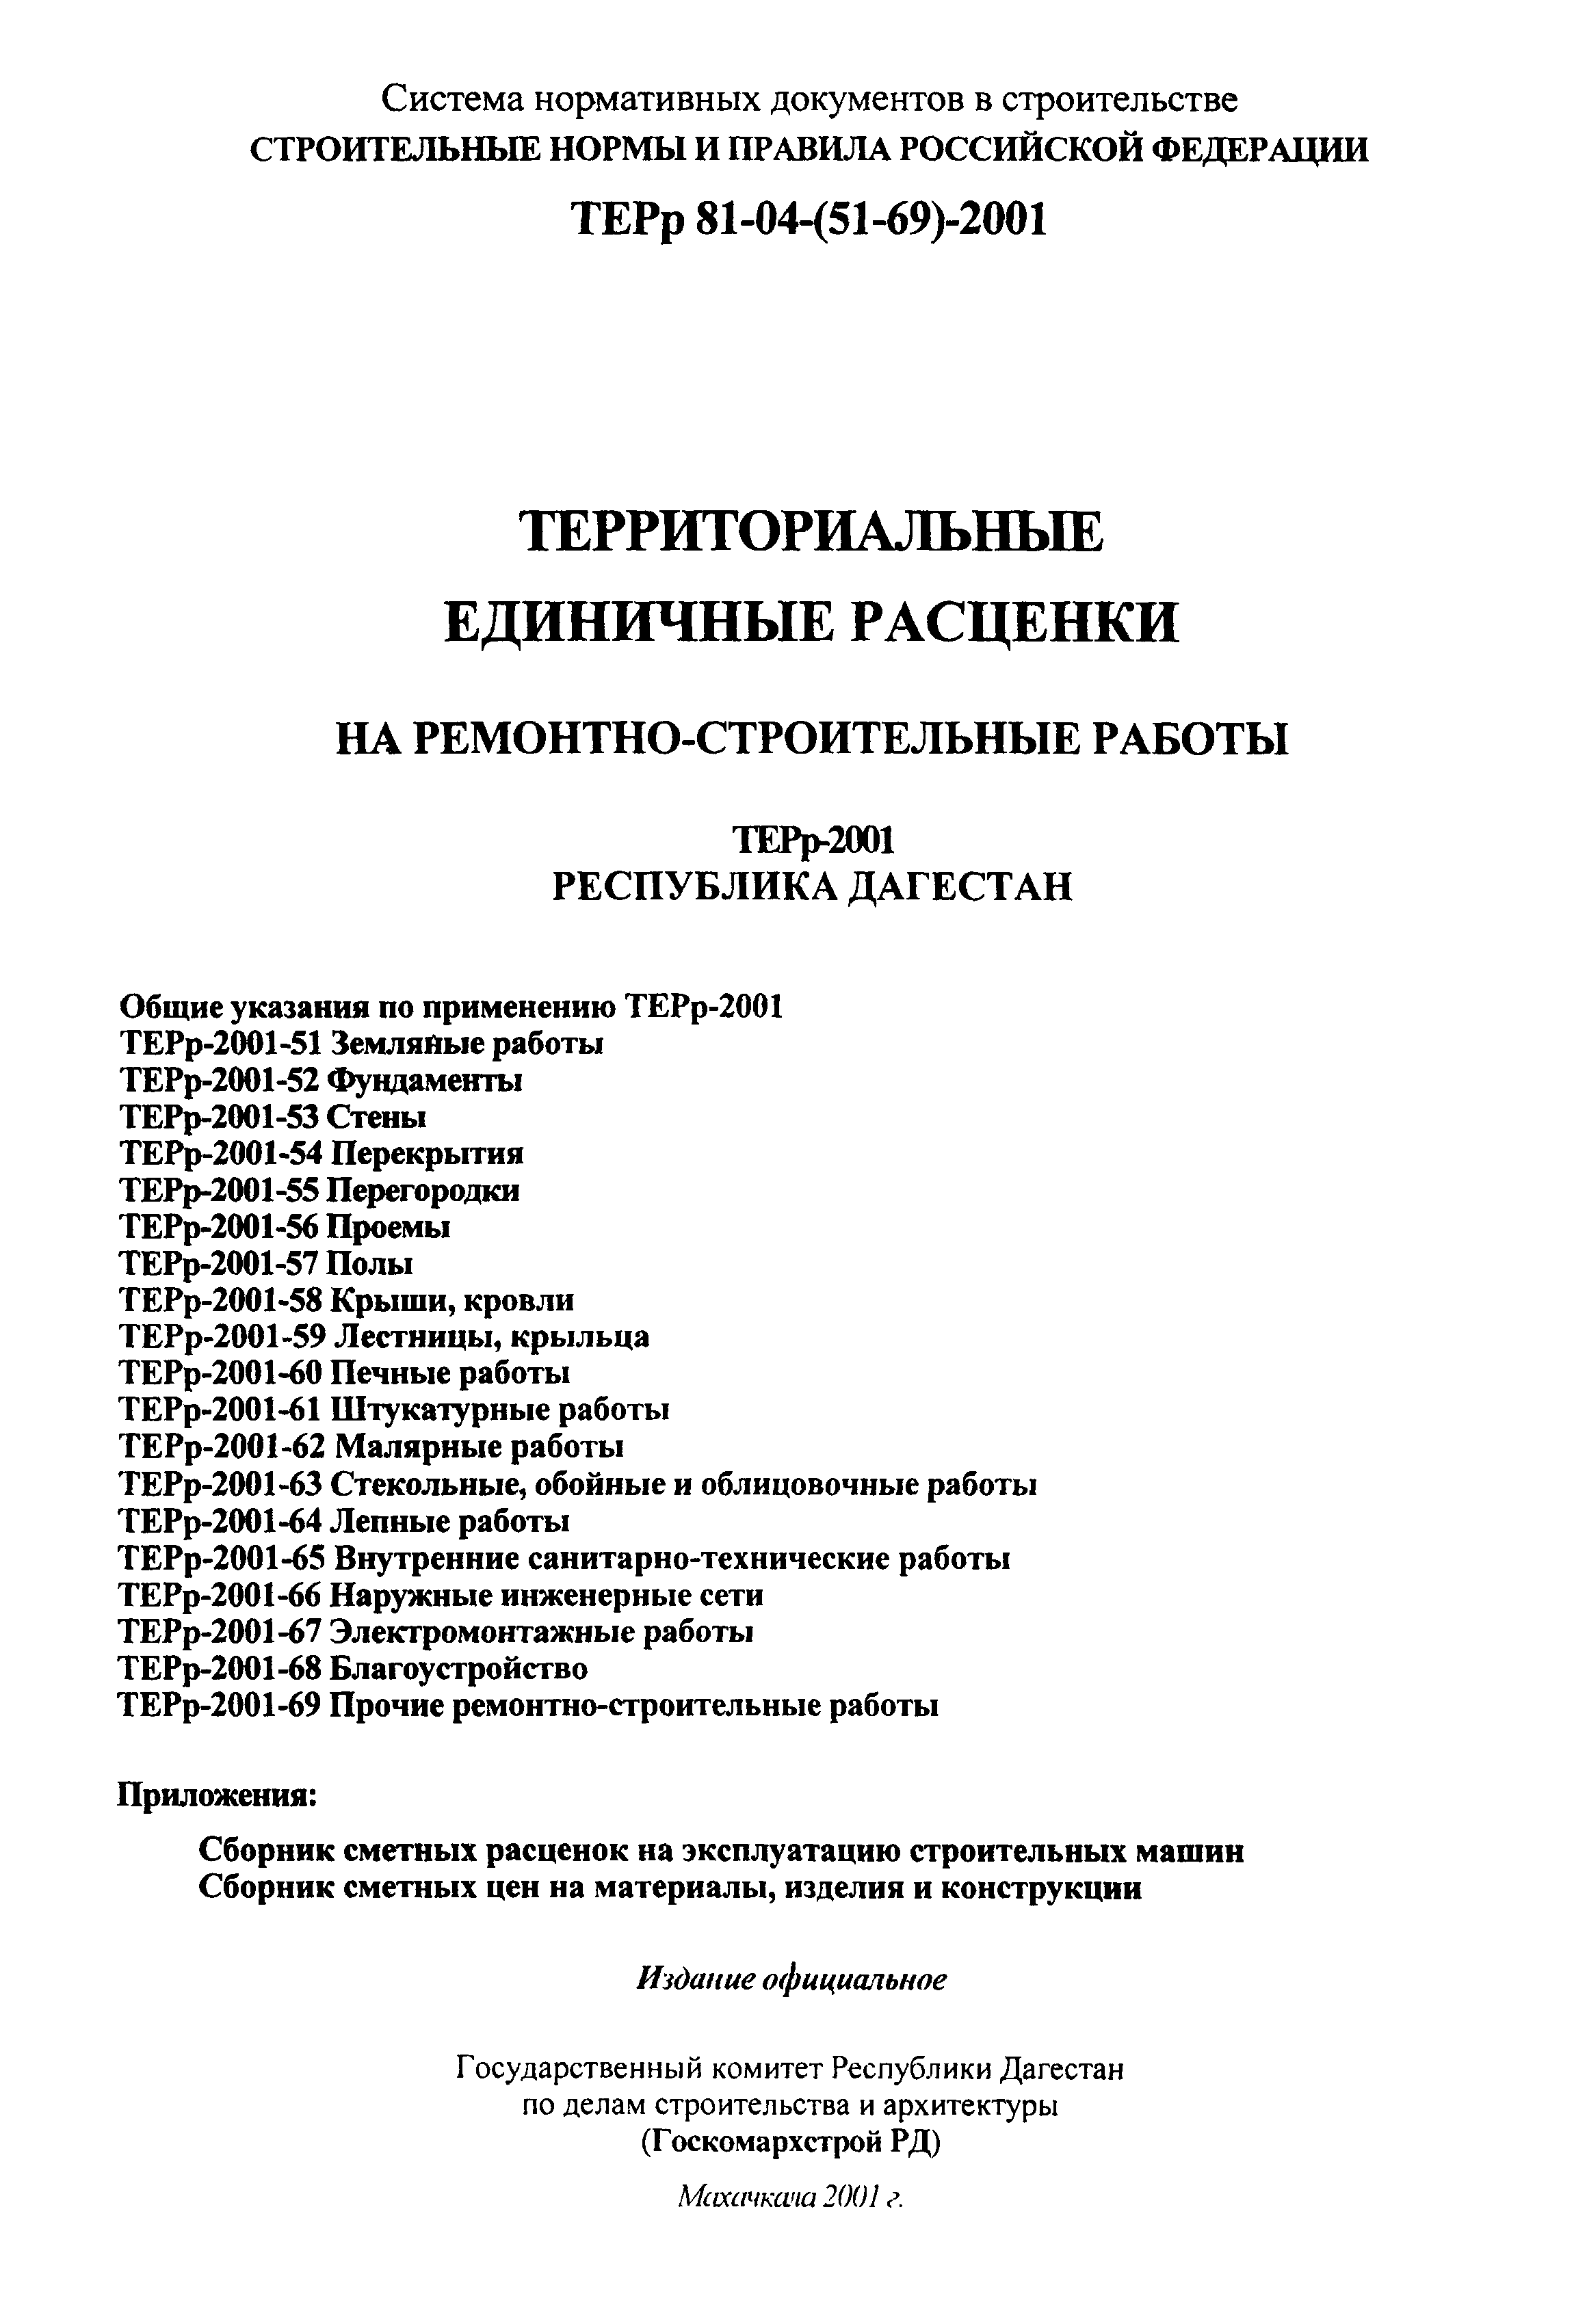 ТЕРр Республика Дагестан 2001-64